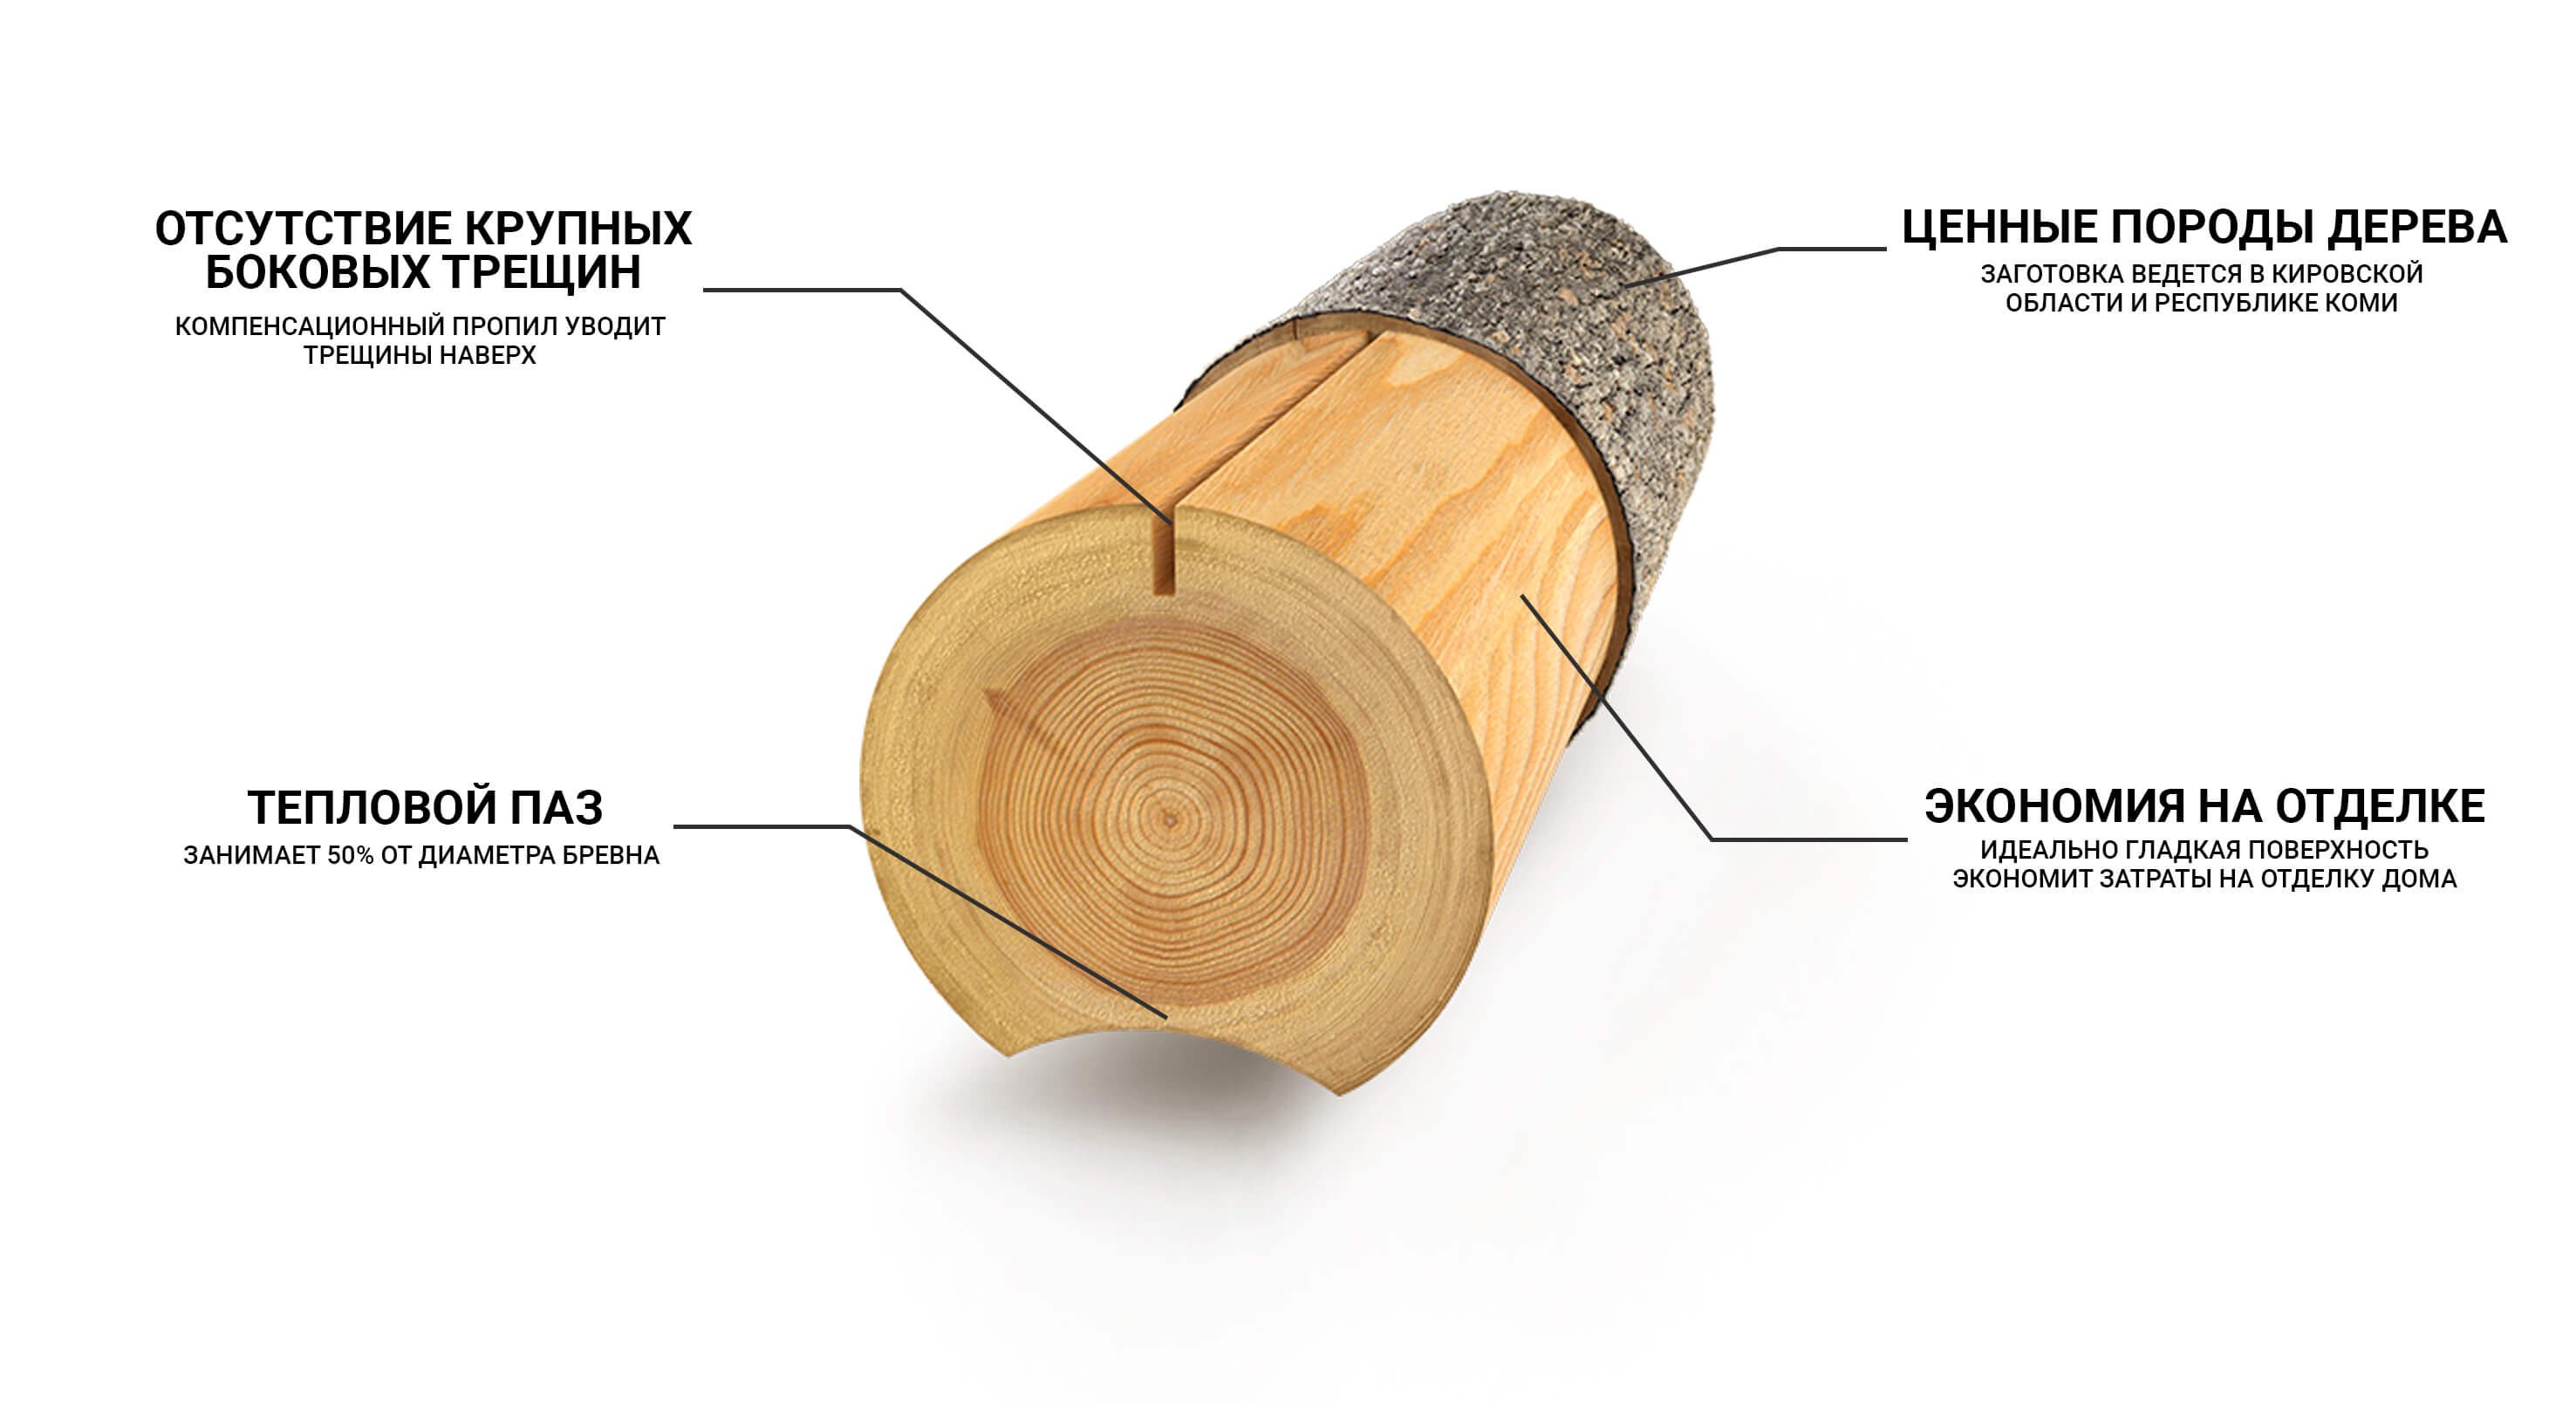 Строение и химический состав древесины